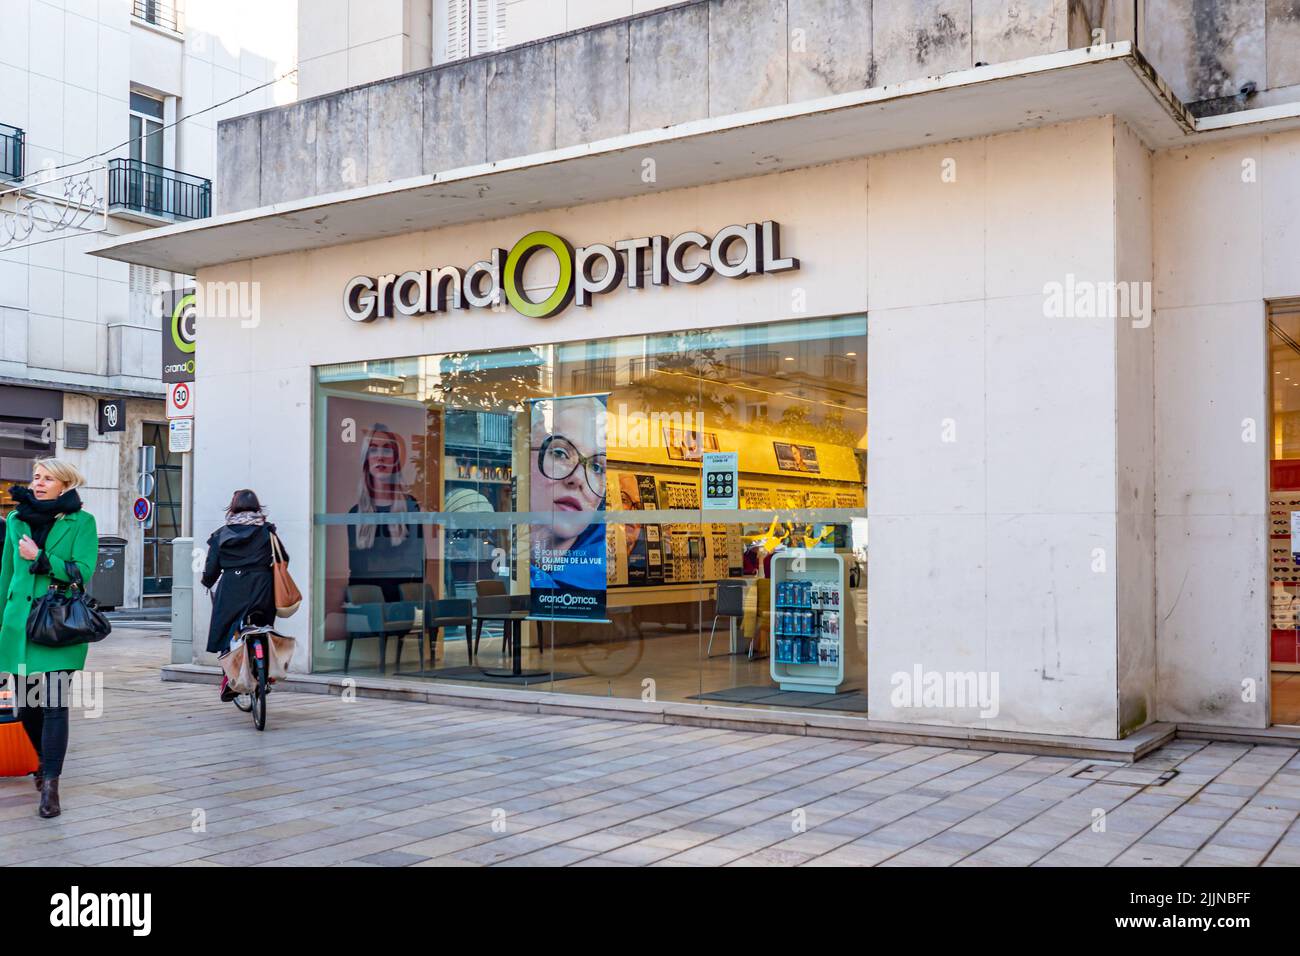 Une grande boutique optique d'opticien façade vue latérale avec logo et signalisation. Banque D'Images